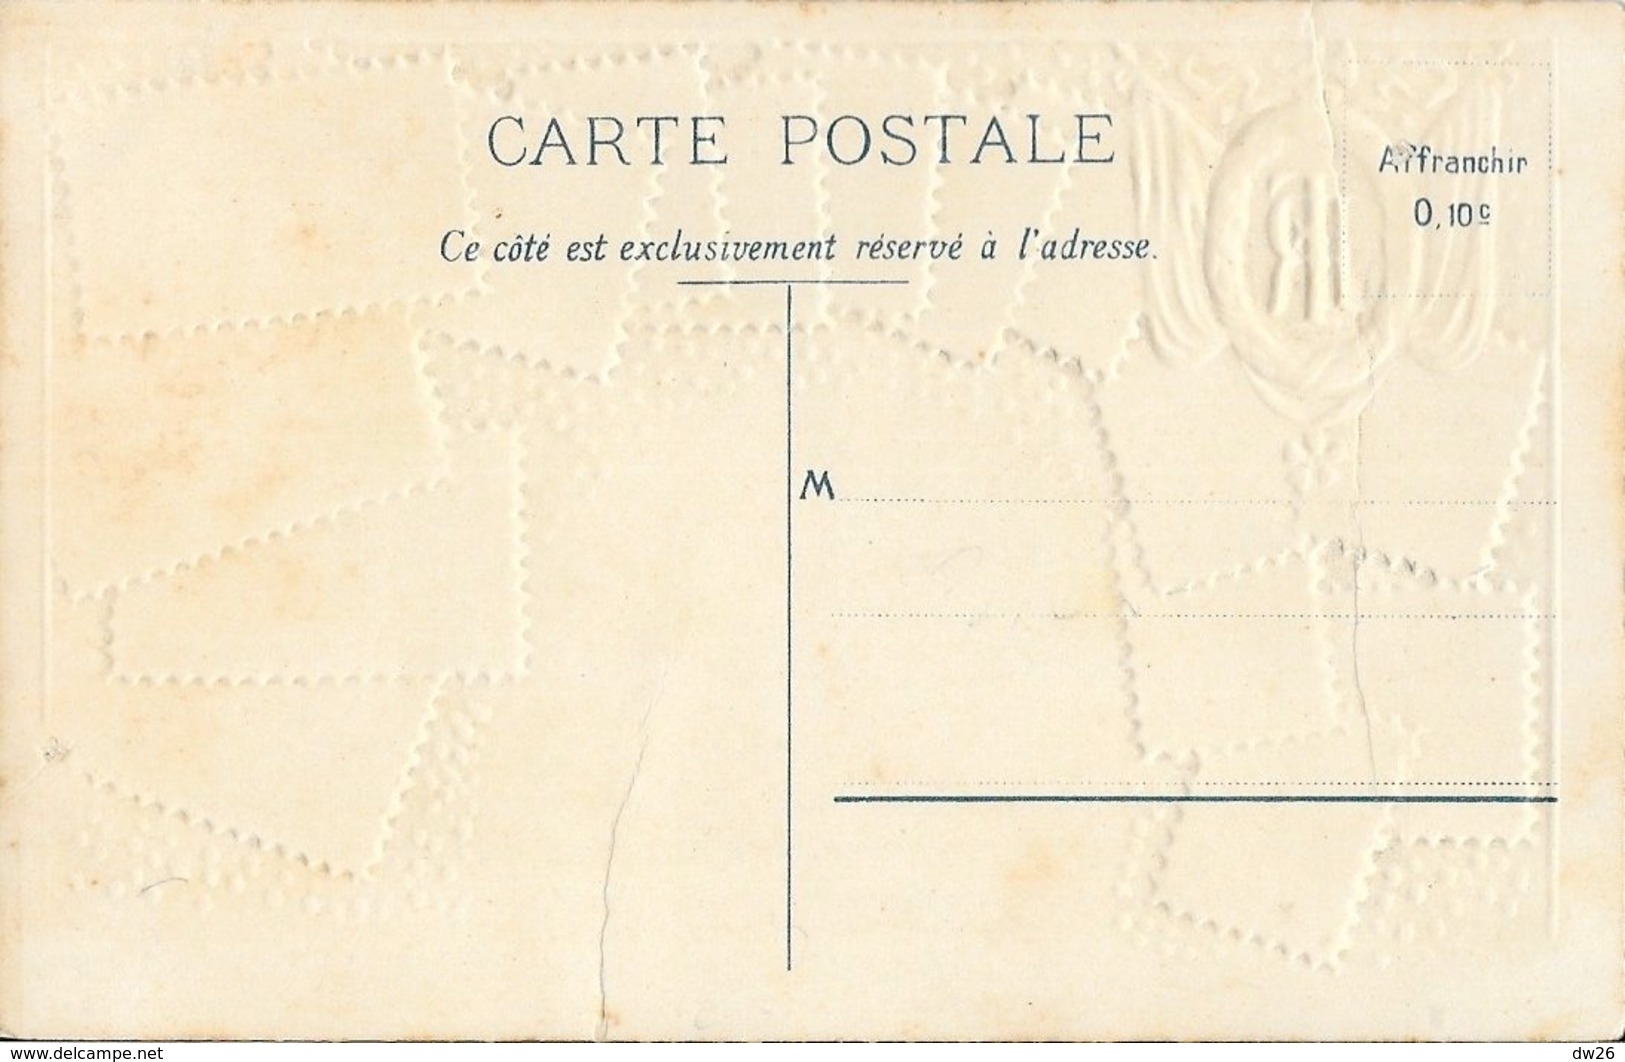 Carte Philatélique D.R.G.M. Non Circulée: Souvenir De France, République Française 1905 - Stamps (pictures)